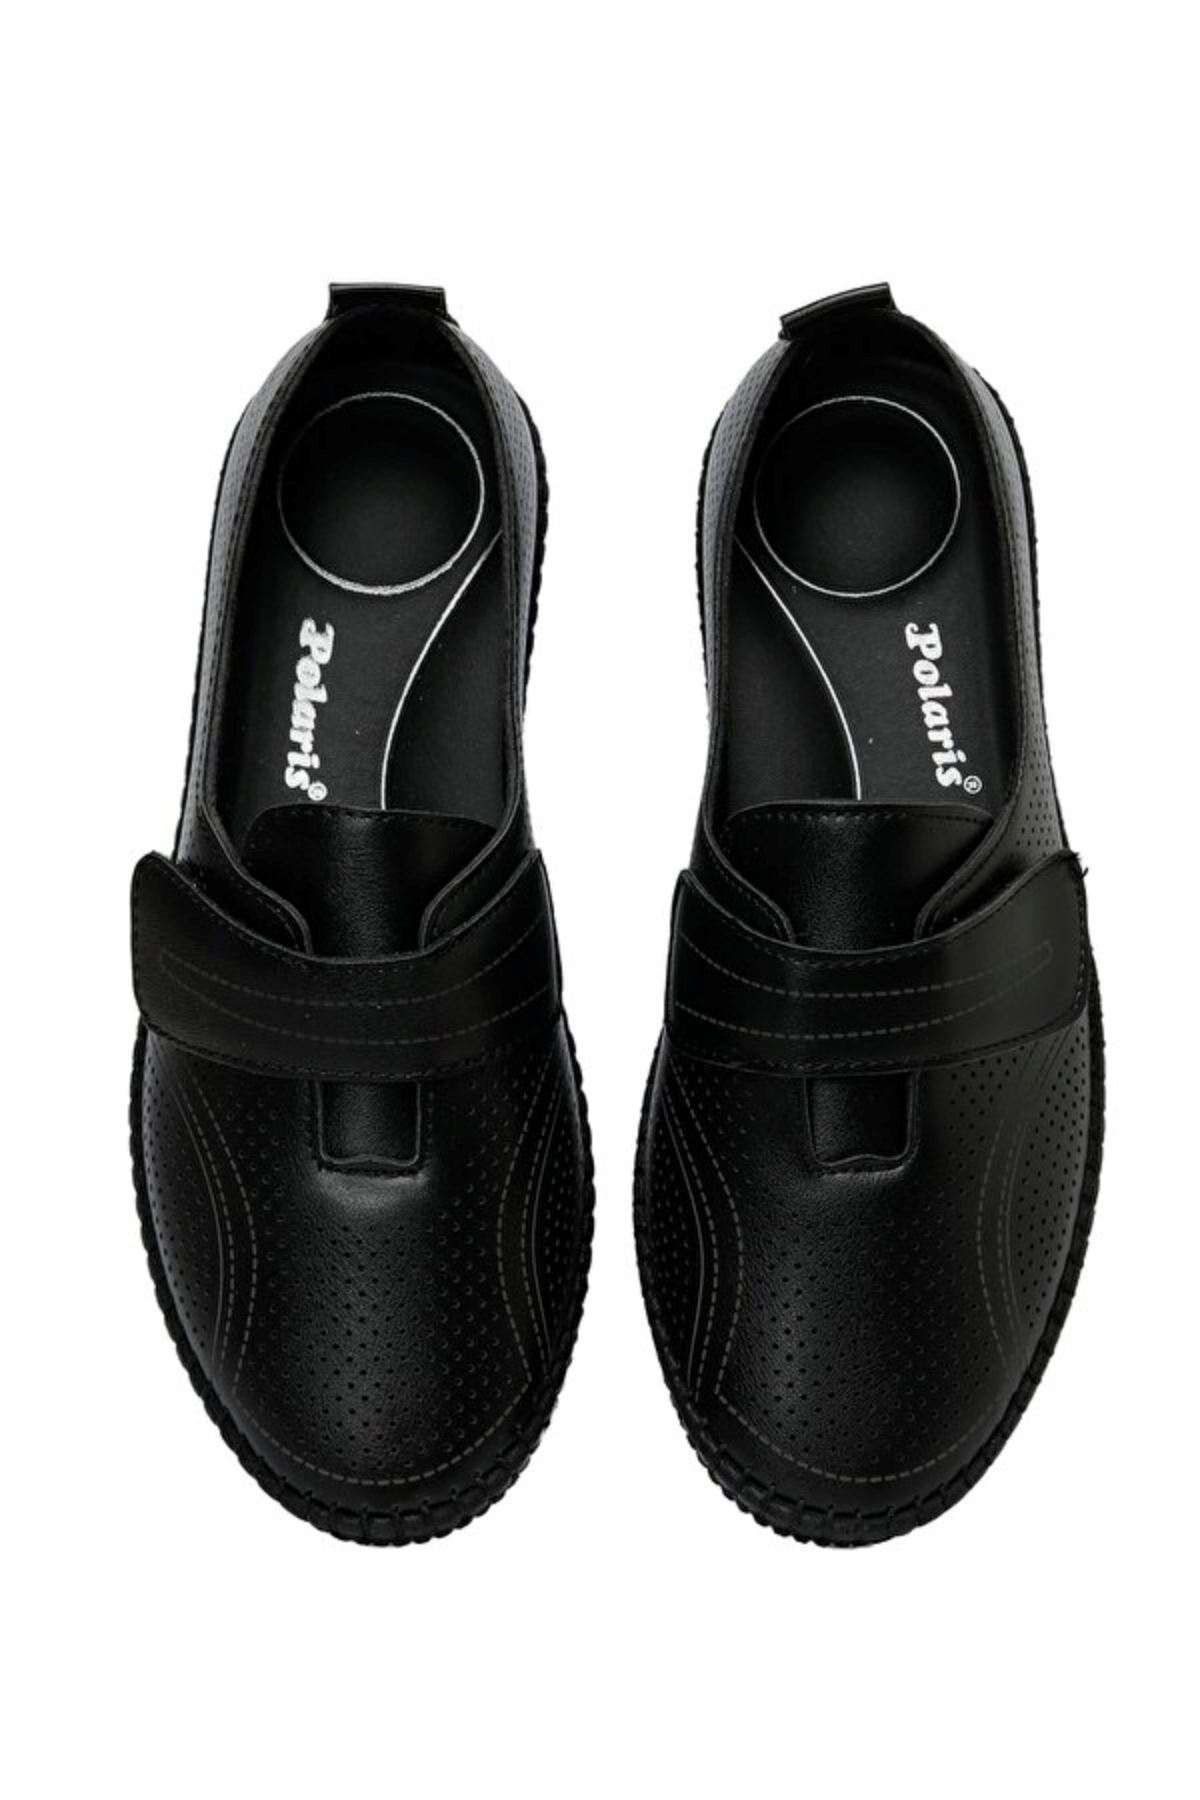 162462.Z3Fx Polaris Kadın Siyah Klasik Ayakkabı - 101339208